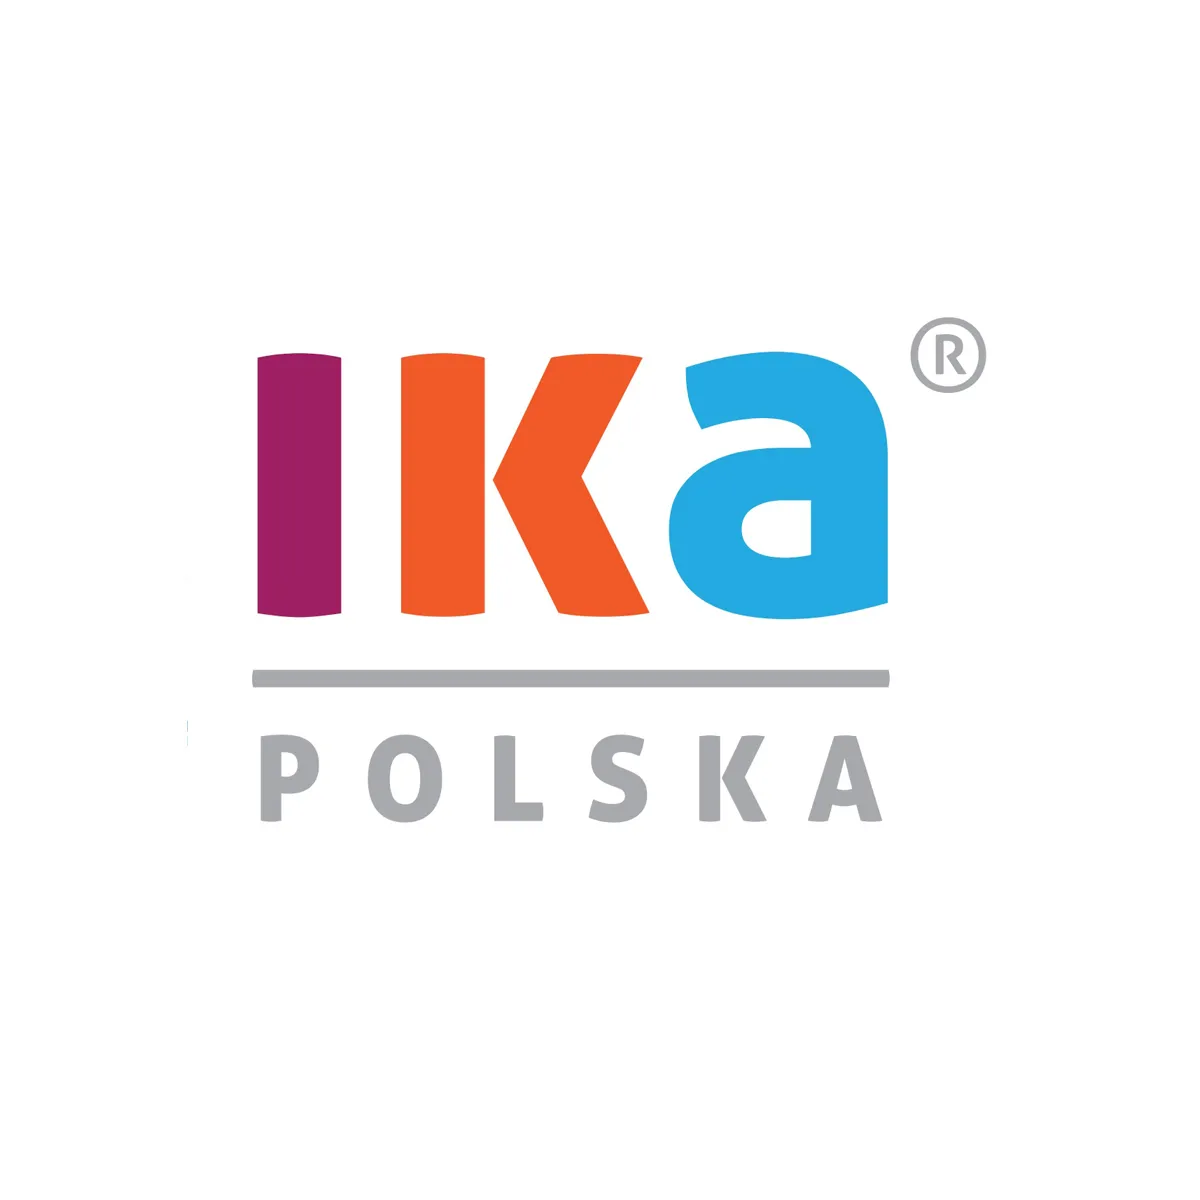 Prime wird ein neues Vertriebszentrum für IKA in Poznań entwerfen und bauen